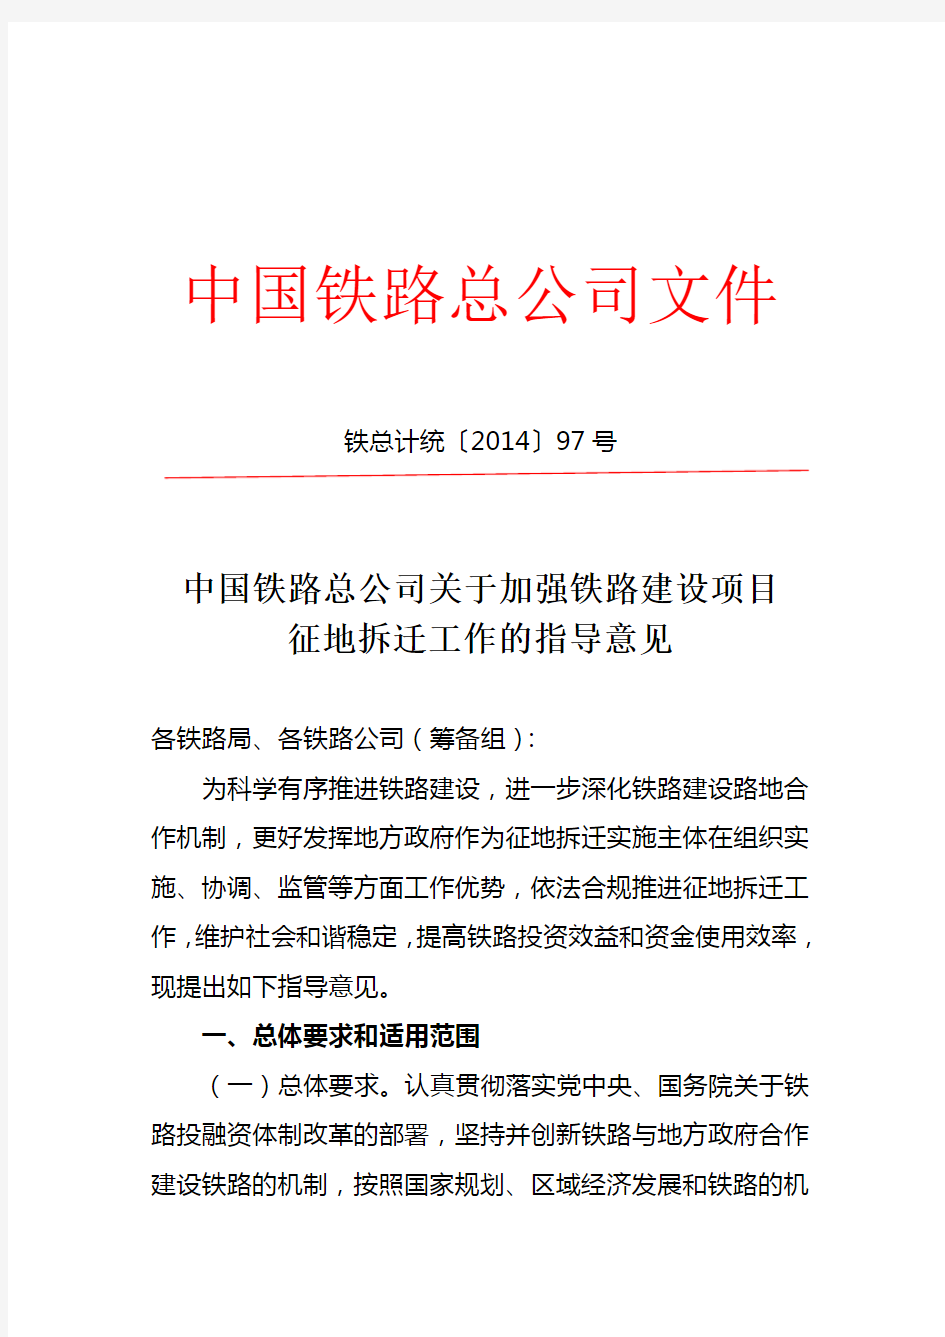 中国铁路总公司关于加强铁路建设项目征地拆迁工作的指导意见